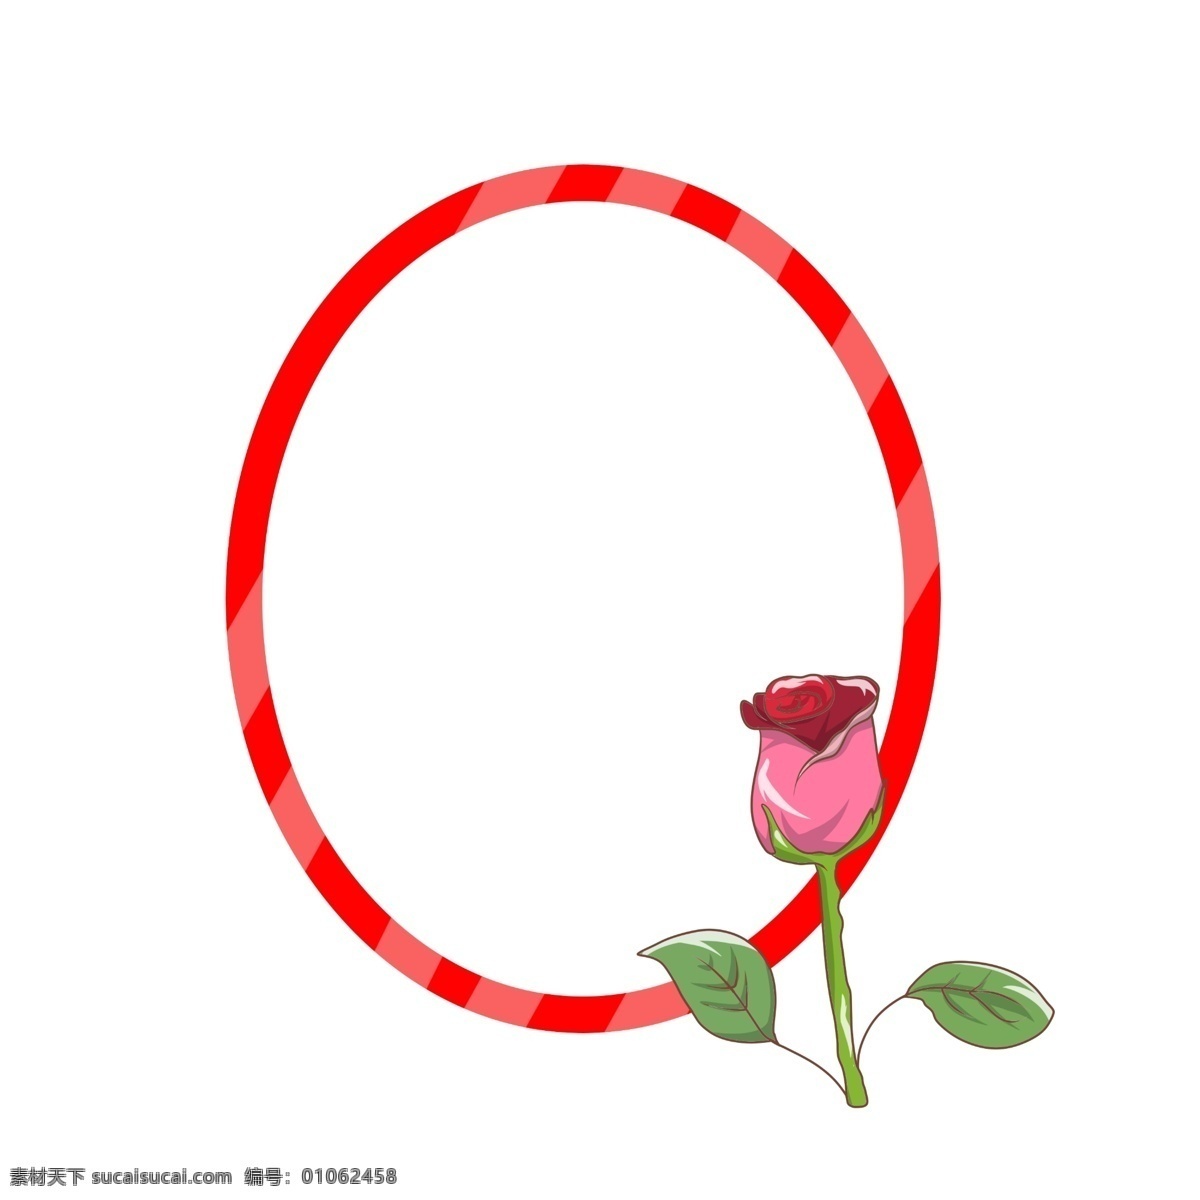 情人节 玫瑰花 边框 椭圆形边框 红色 红色边框 玫瑰花边框 边框插画 边框插图 爱情玫瑰花